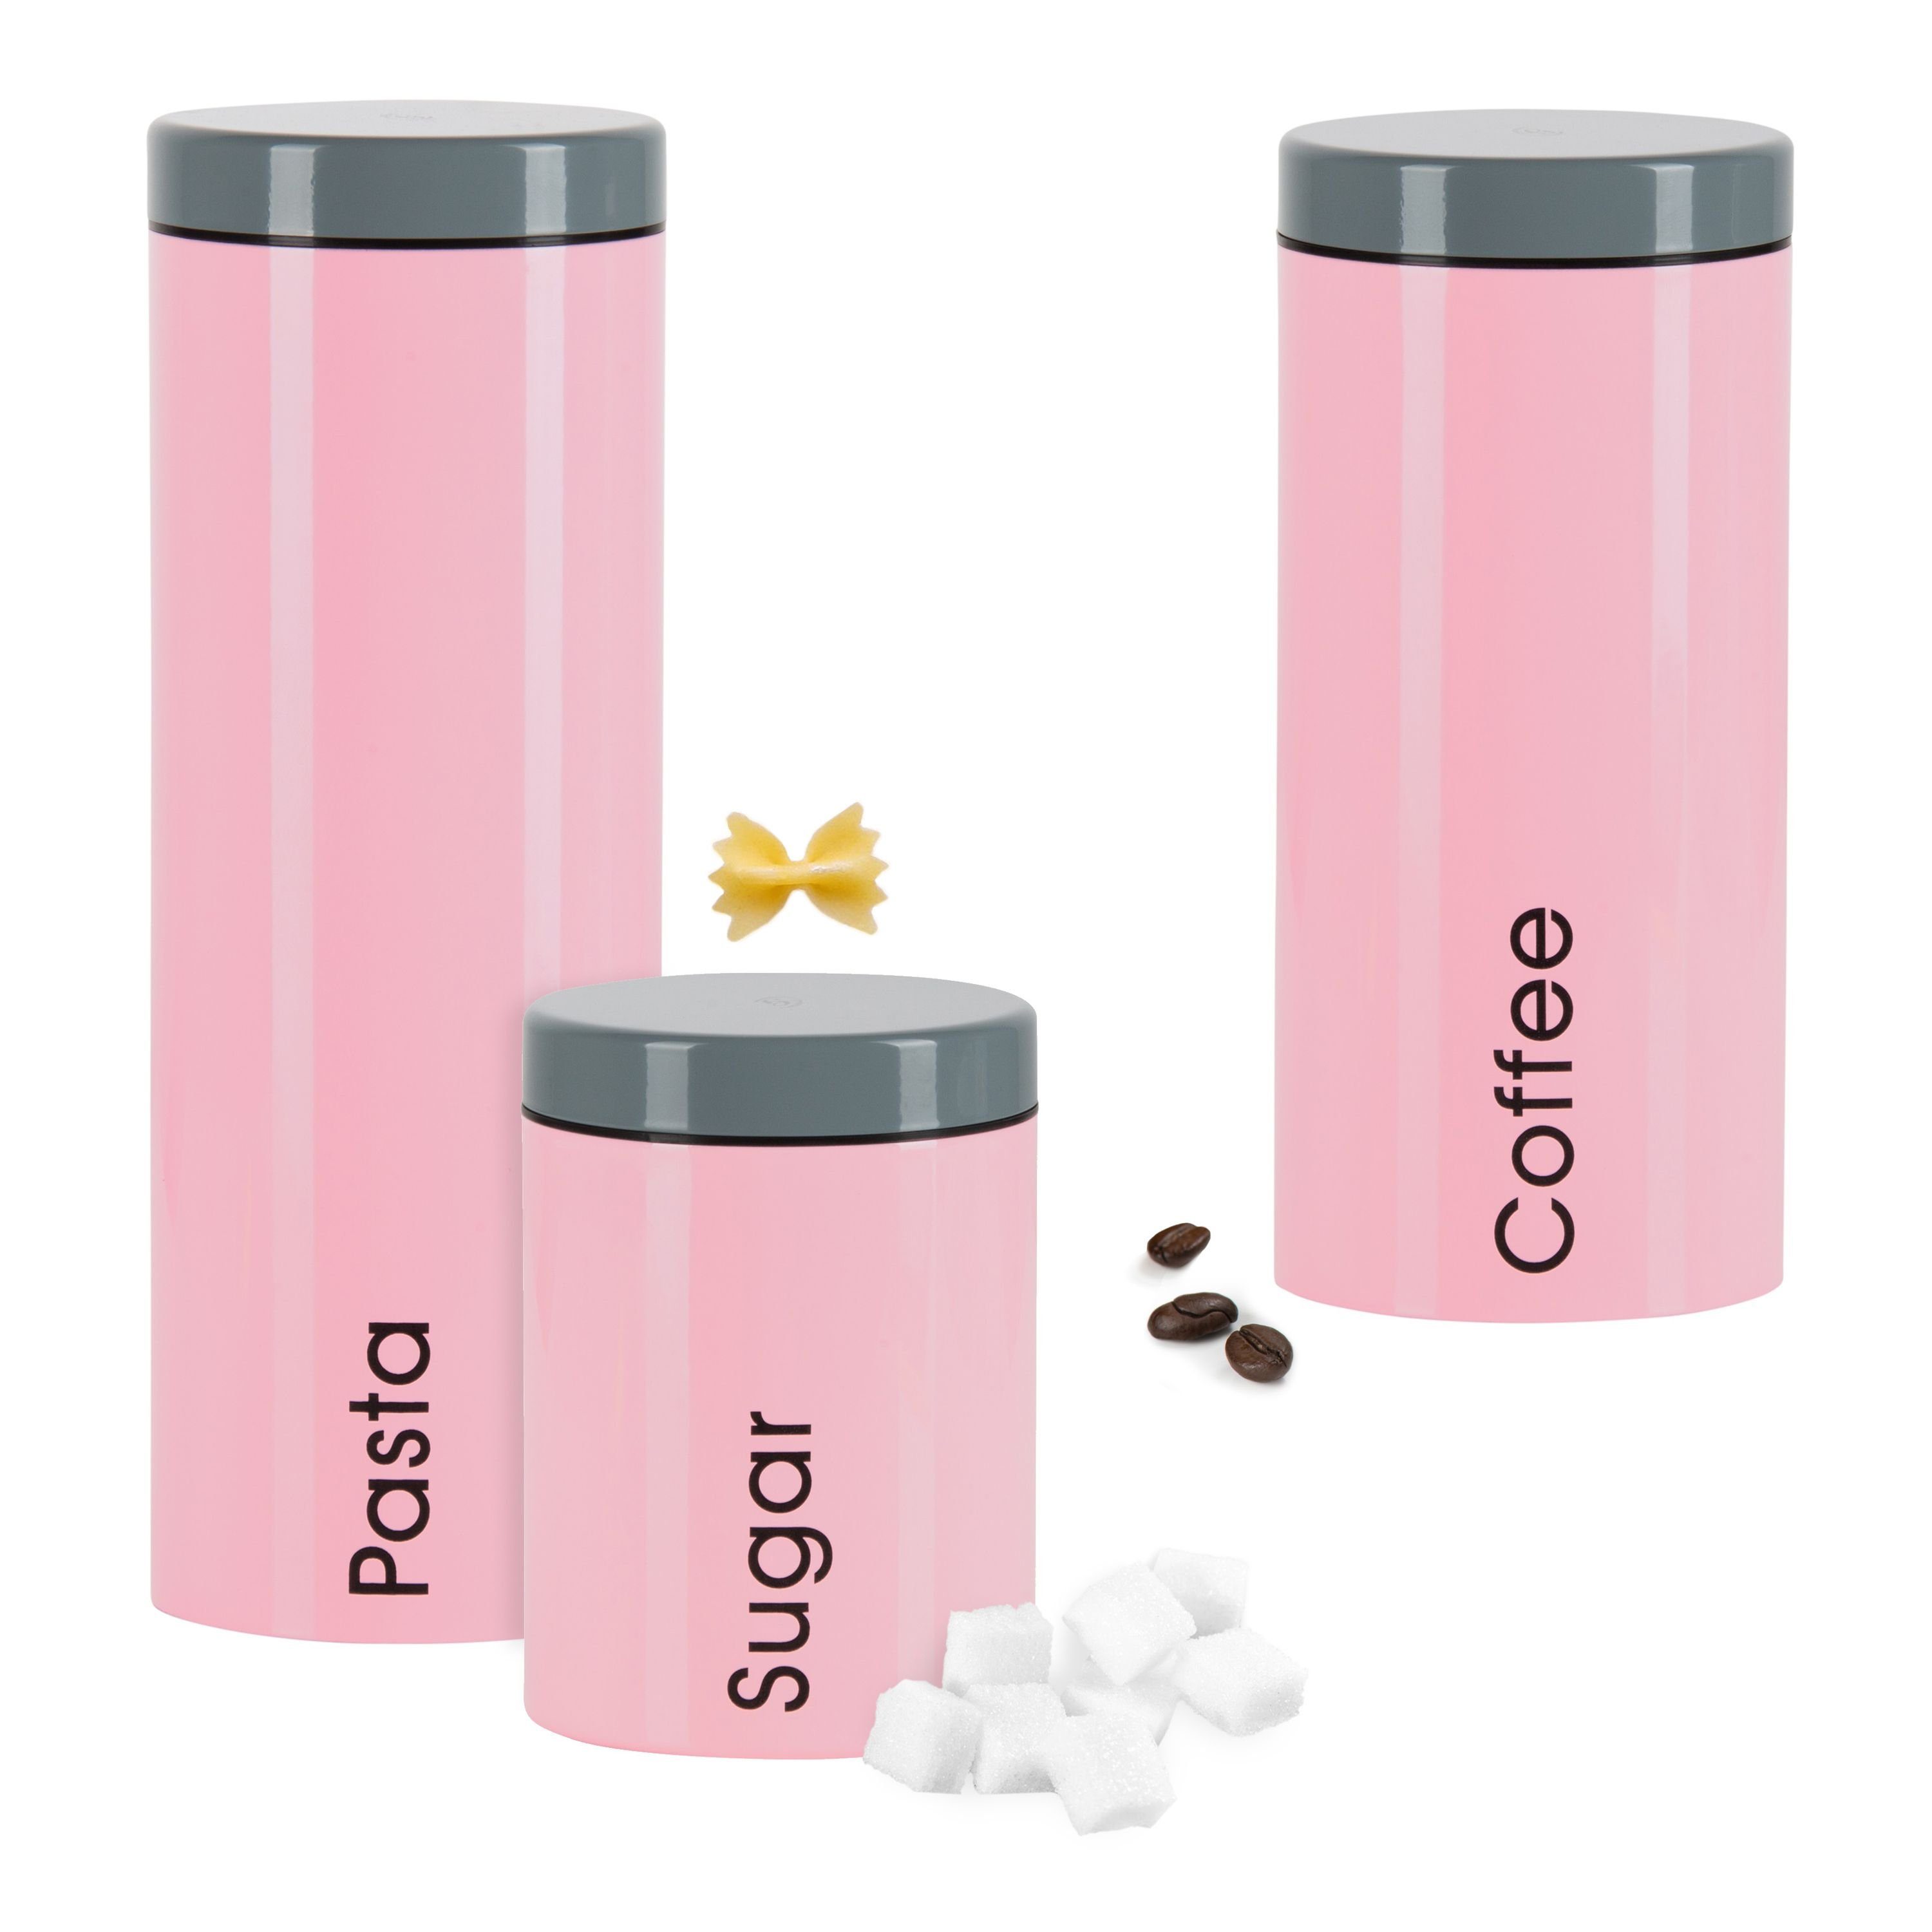 Genius Vorratsglas 3er Set Vorratsdosen Genius: Pasta + Coffee + Sugar, Metall Pink